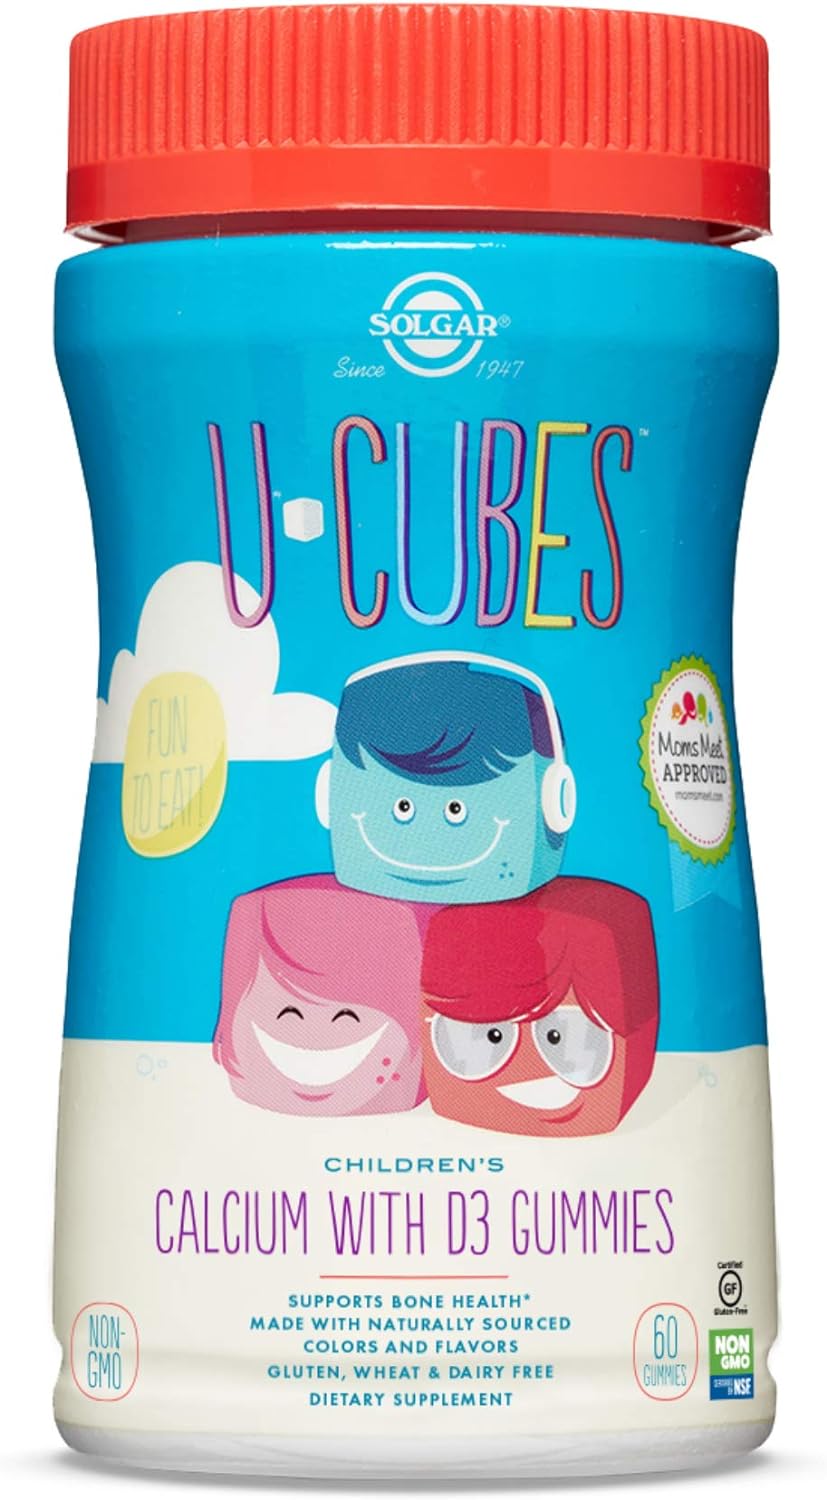 Solgar U-Cubes Children's Calcium with Vitamin D3, 60 Gummies - 3 Flav